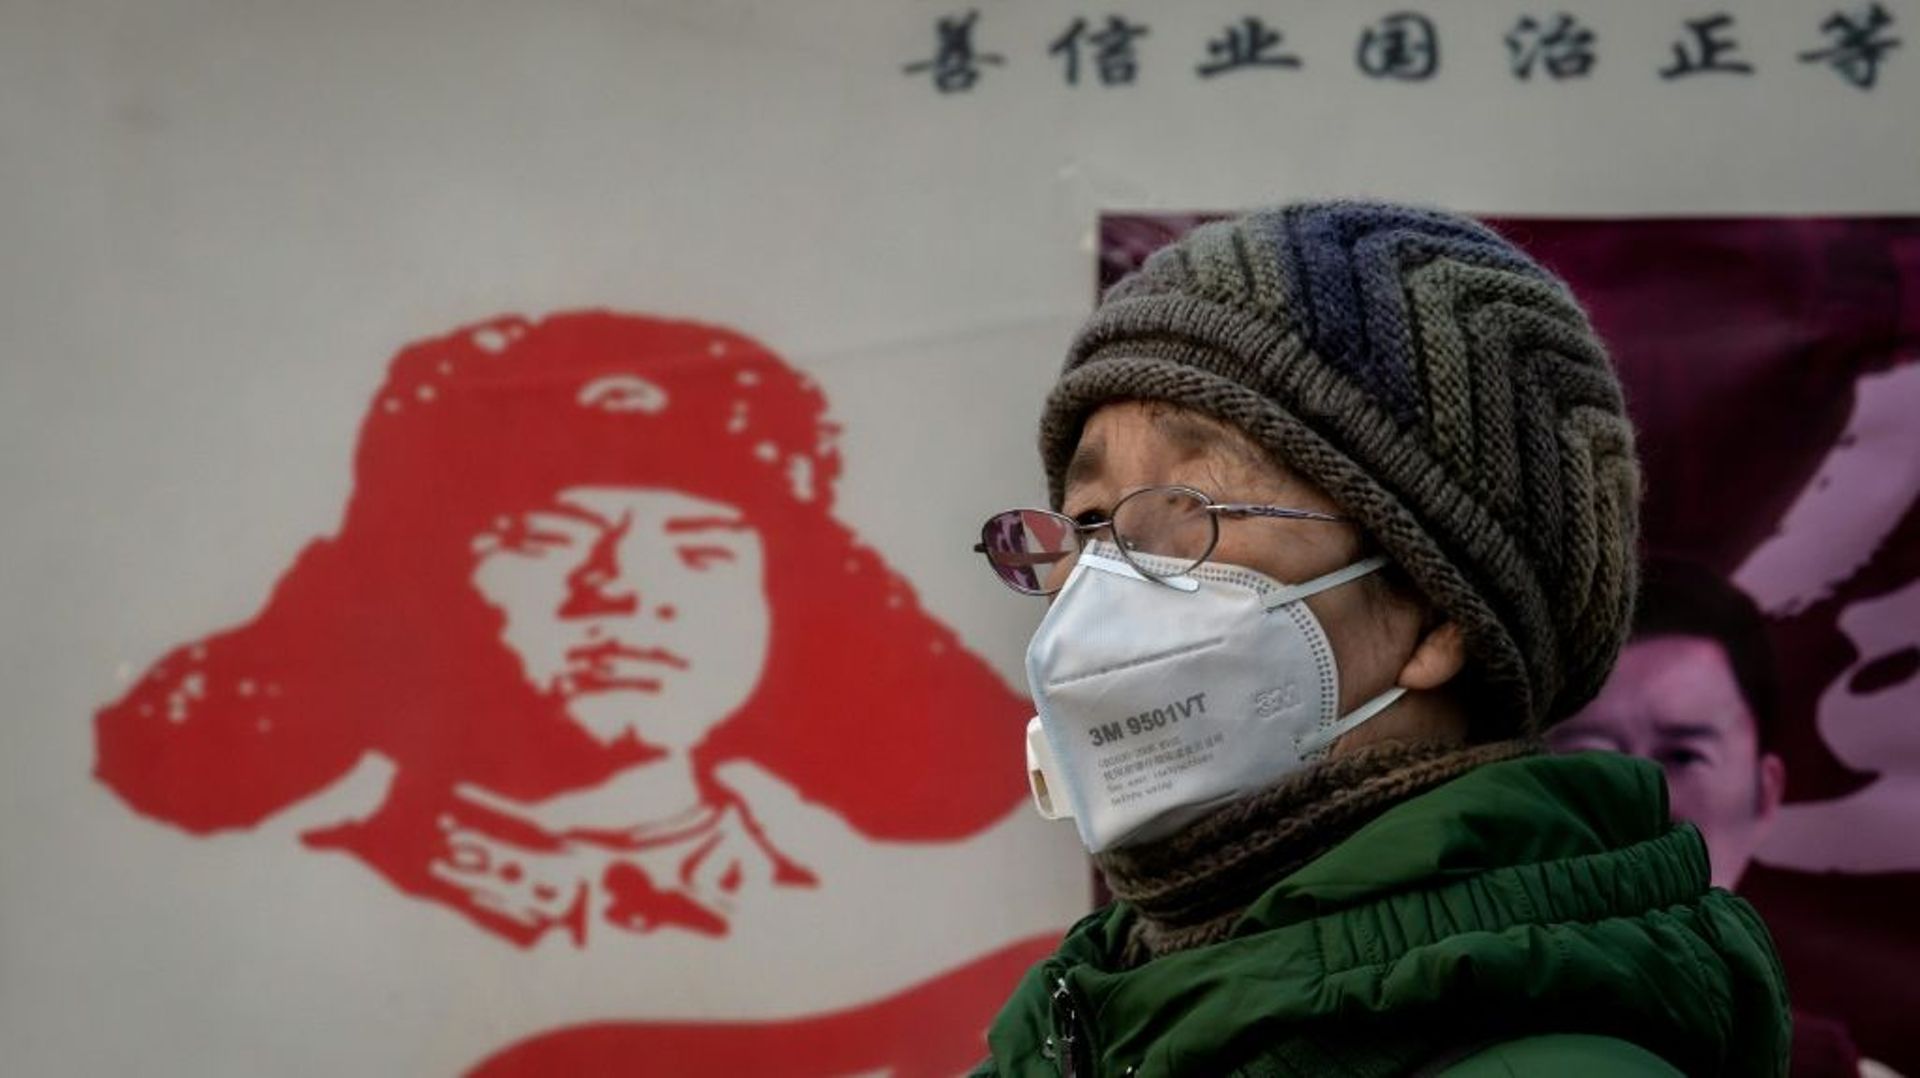 Une femme porte un masque de protection contre l'épidémie de coronavirus, près de la gare de Pékin, le 27 janvier 2020